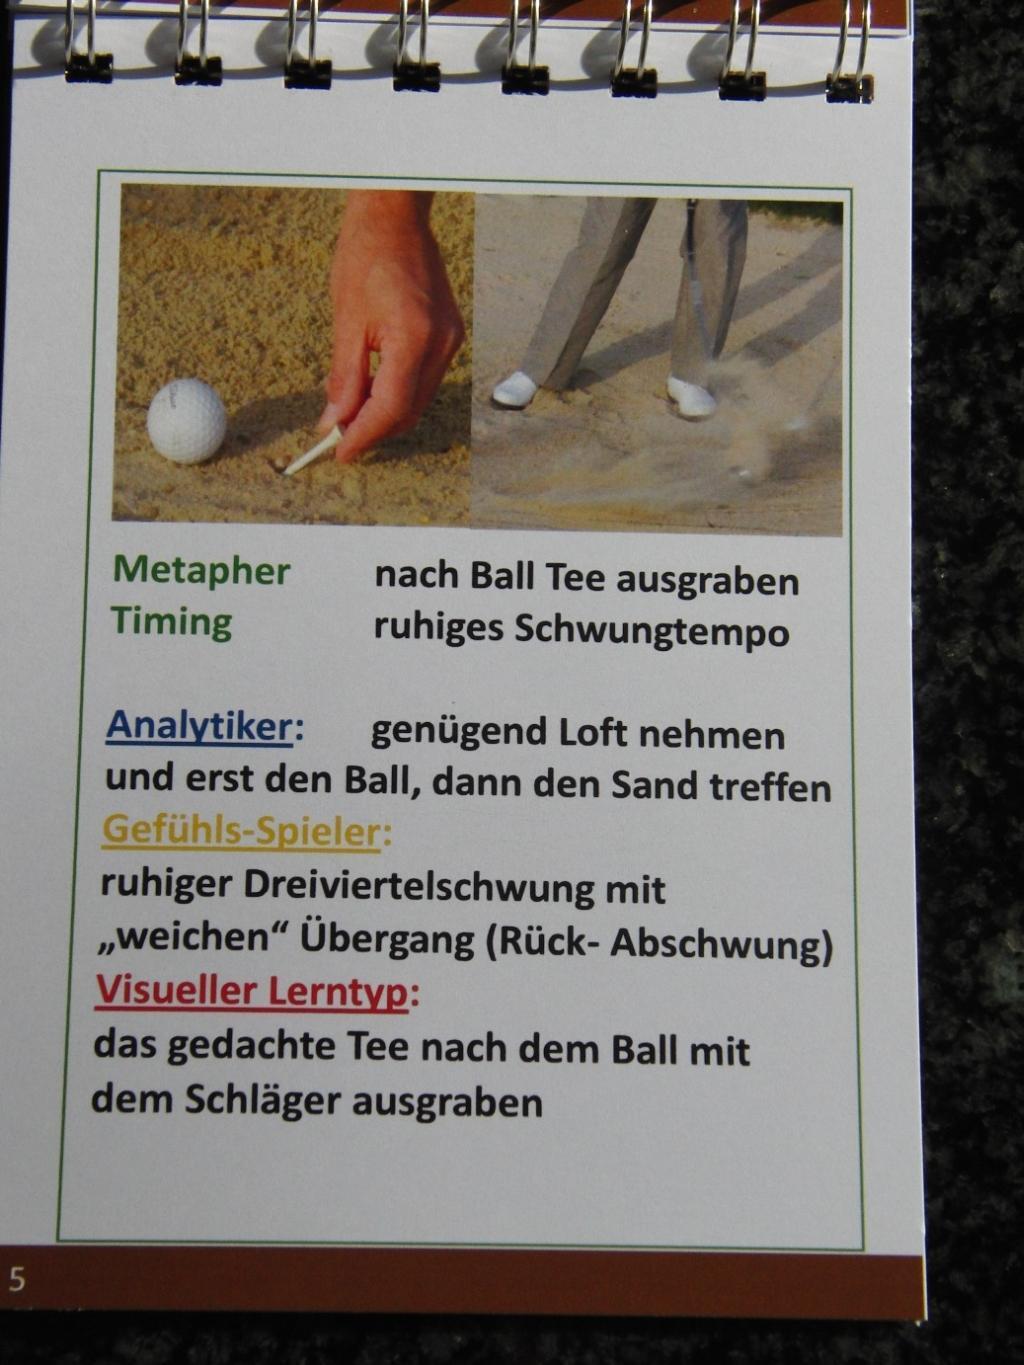 Bild: 9783000364945 | erfolgreich golfen - Grundschläge | Peter Koenig | Taschenbuch | 2013